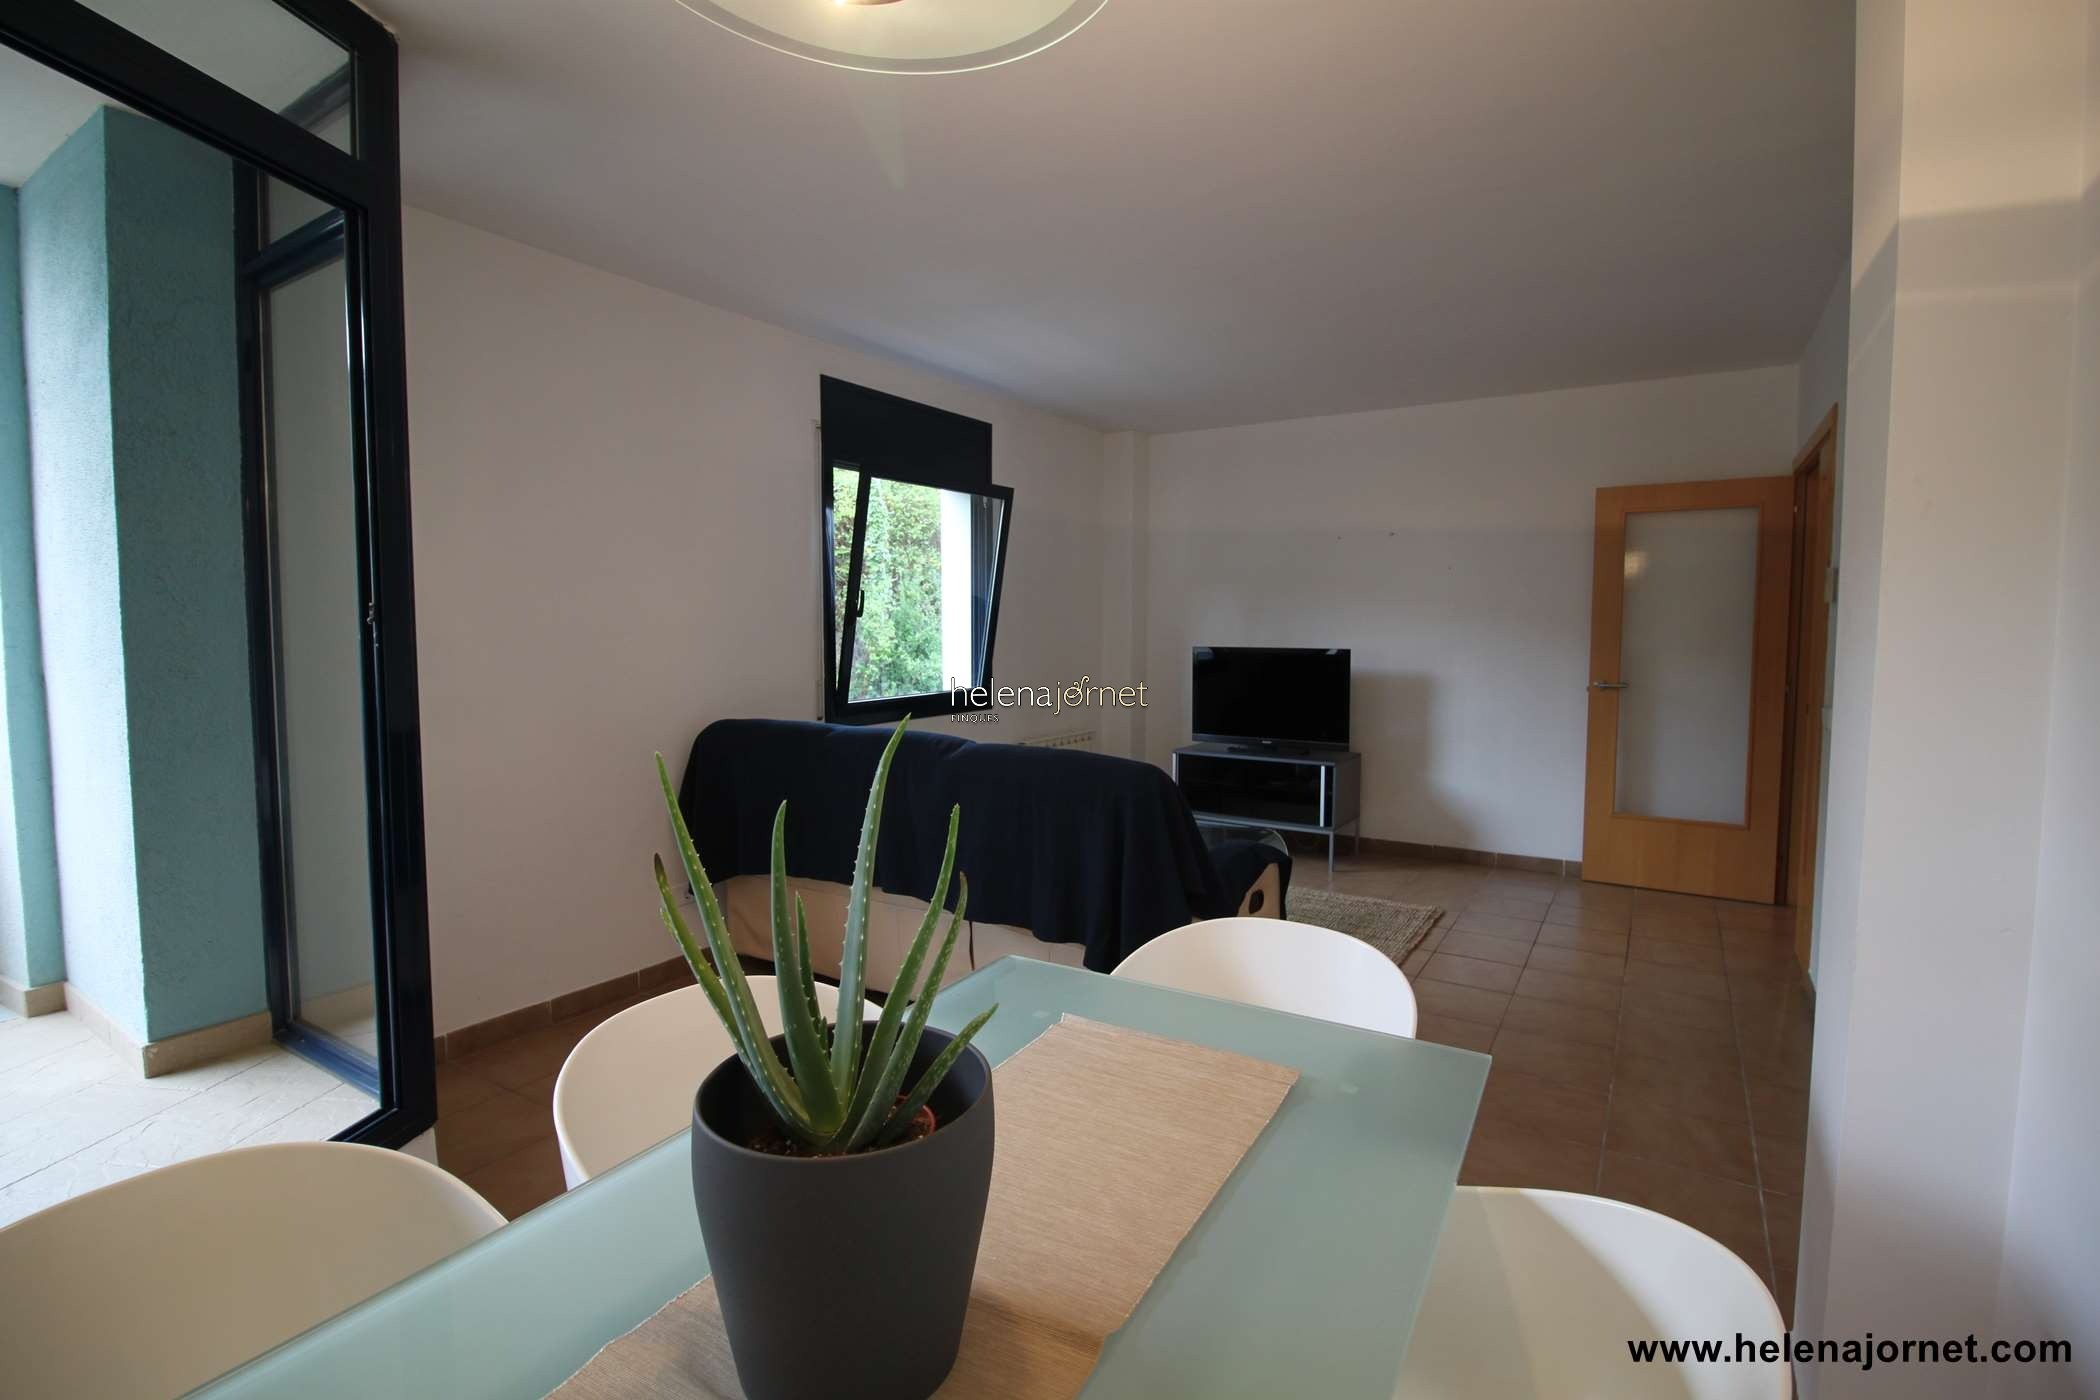 Apartament amb terrassa i piscina comunitària a 5 minuts de la platja - 70110 - Sant Feliu